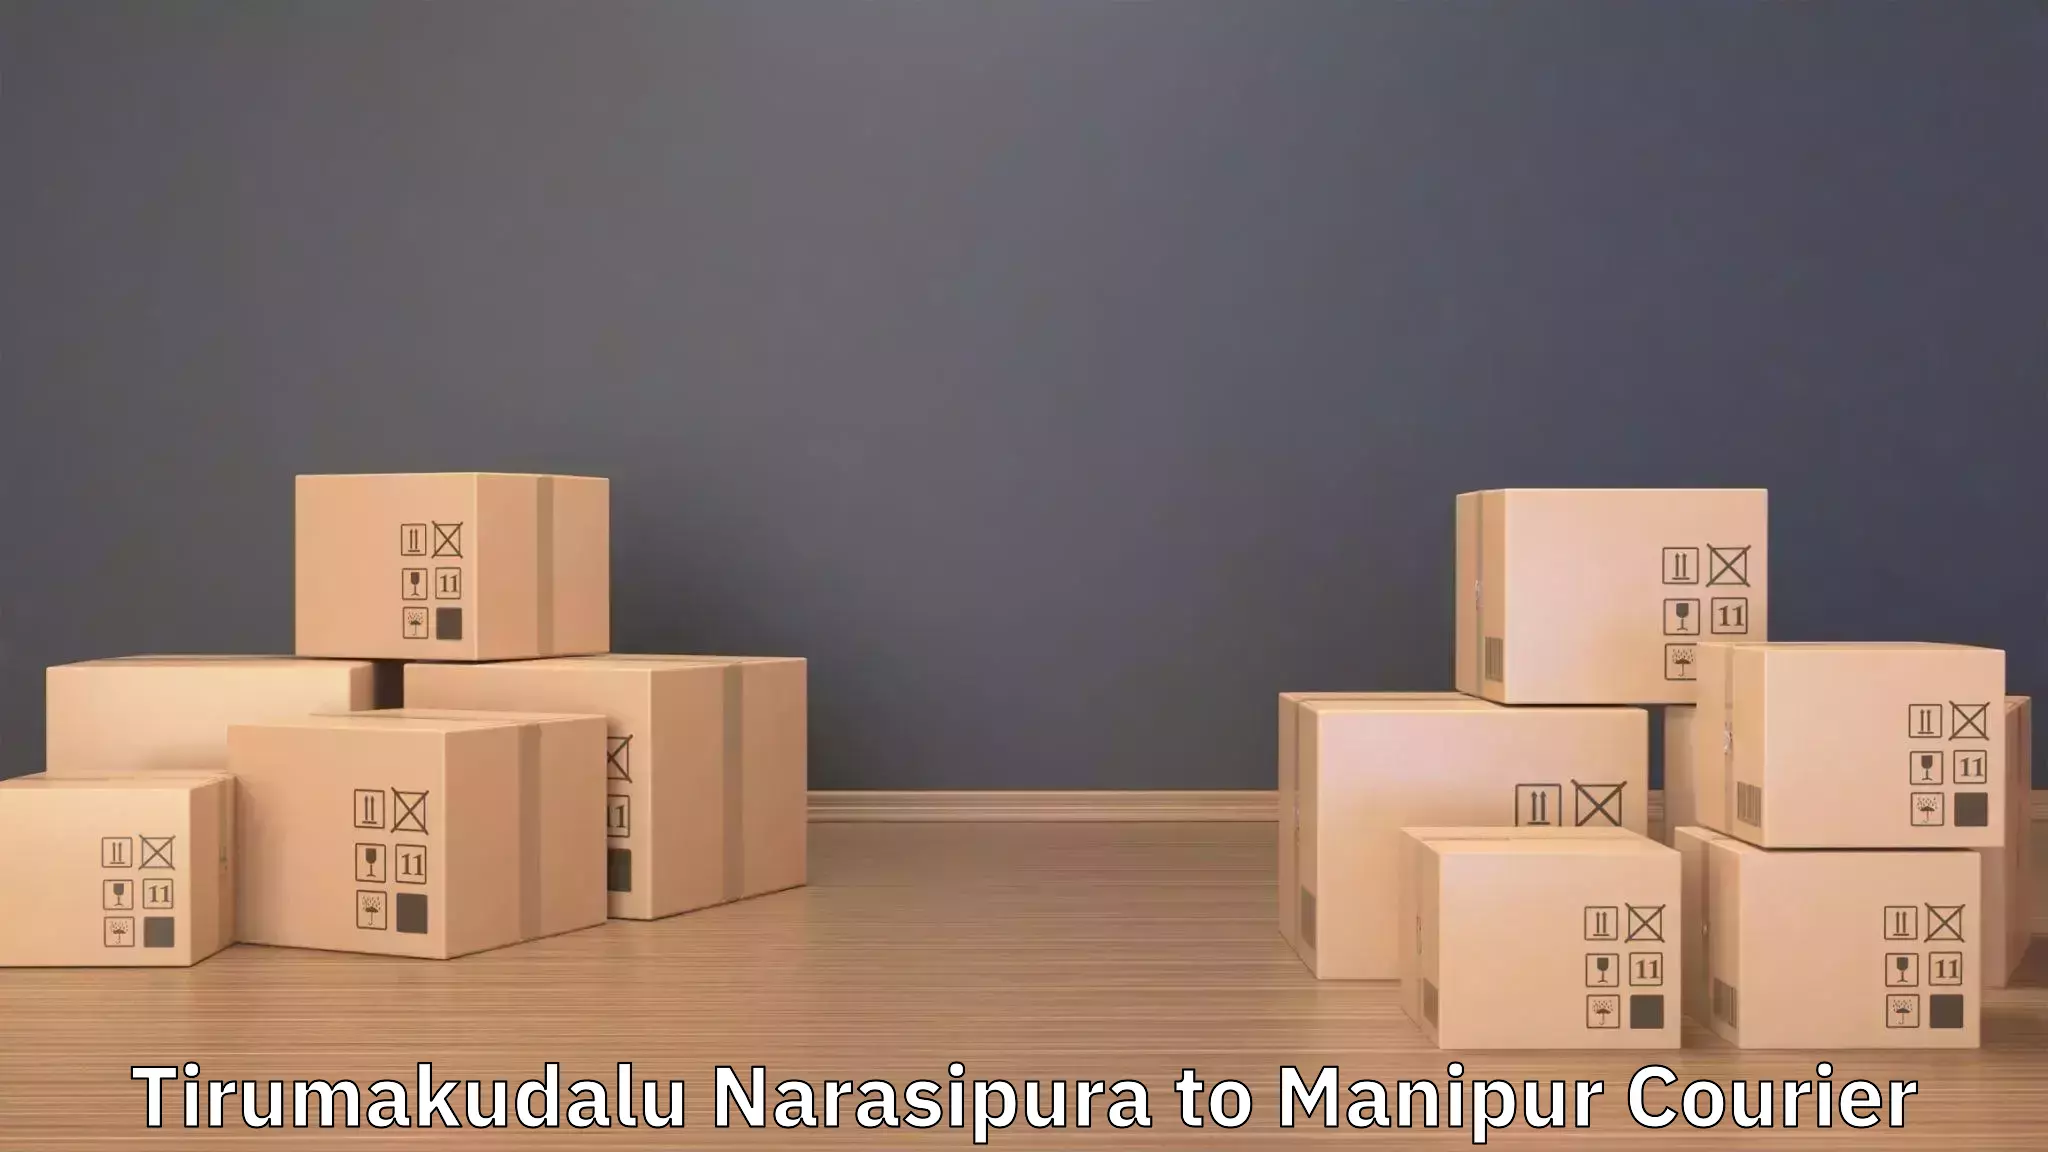 Skilled furniture movers Tirumakudalu Narasipura to Chandel